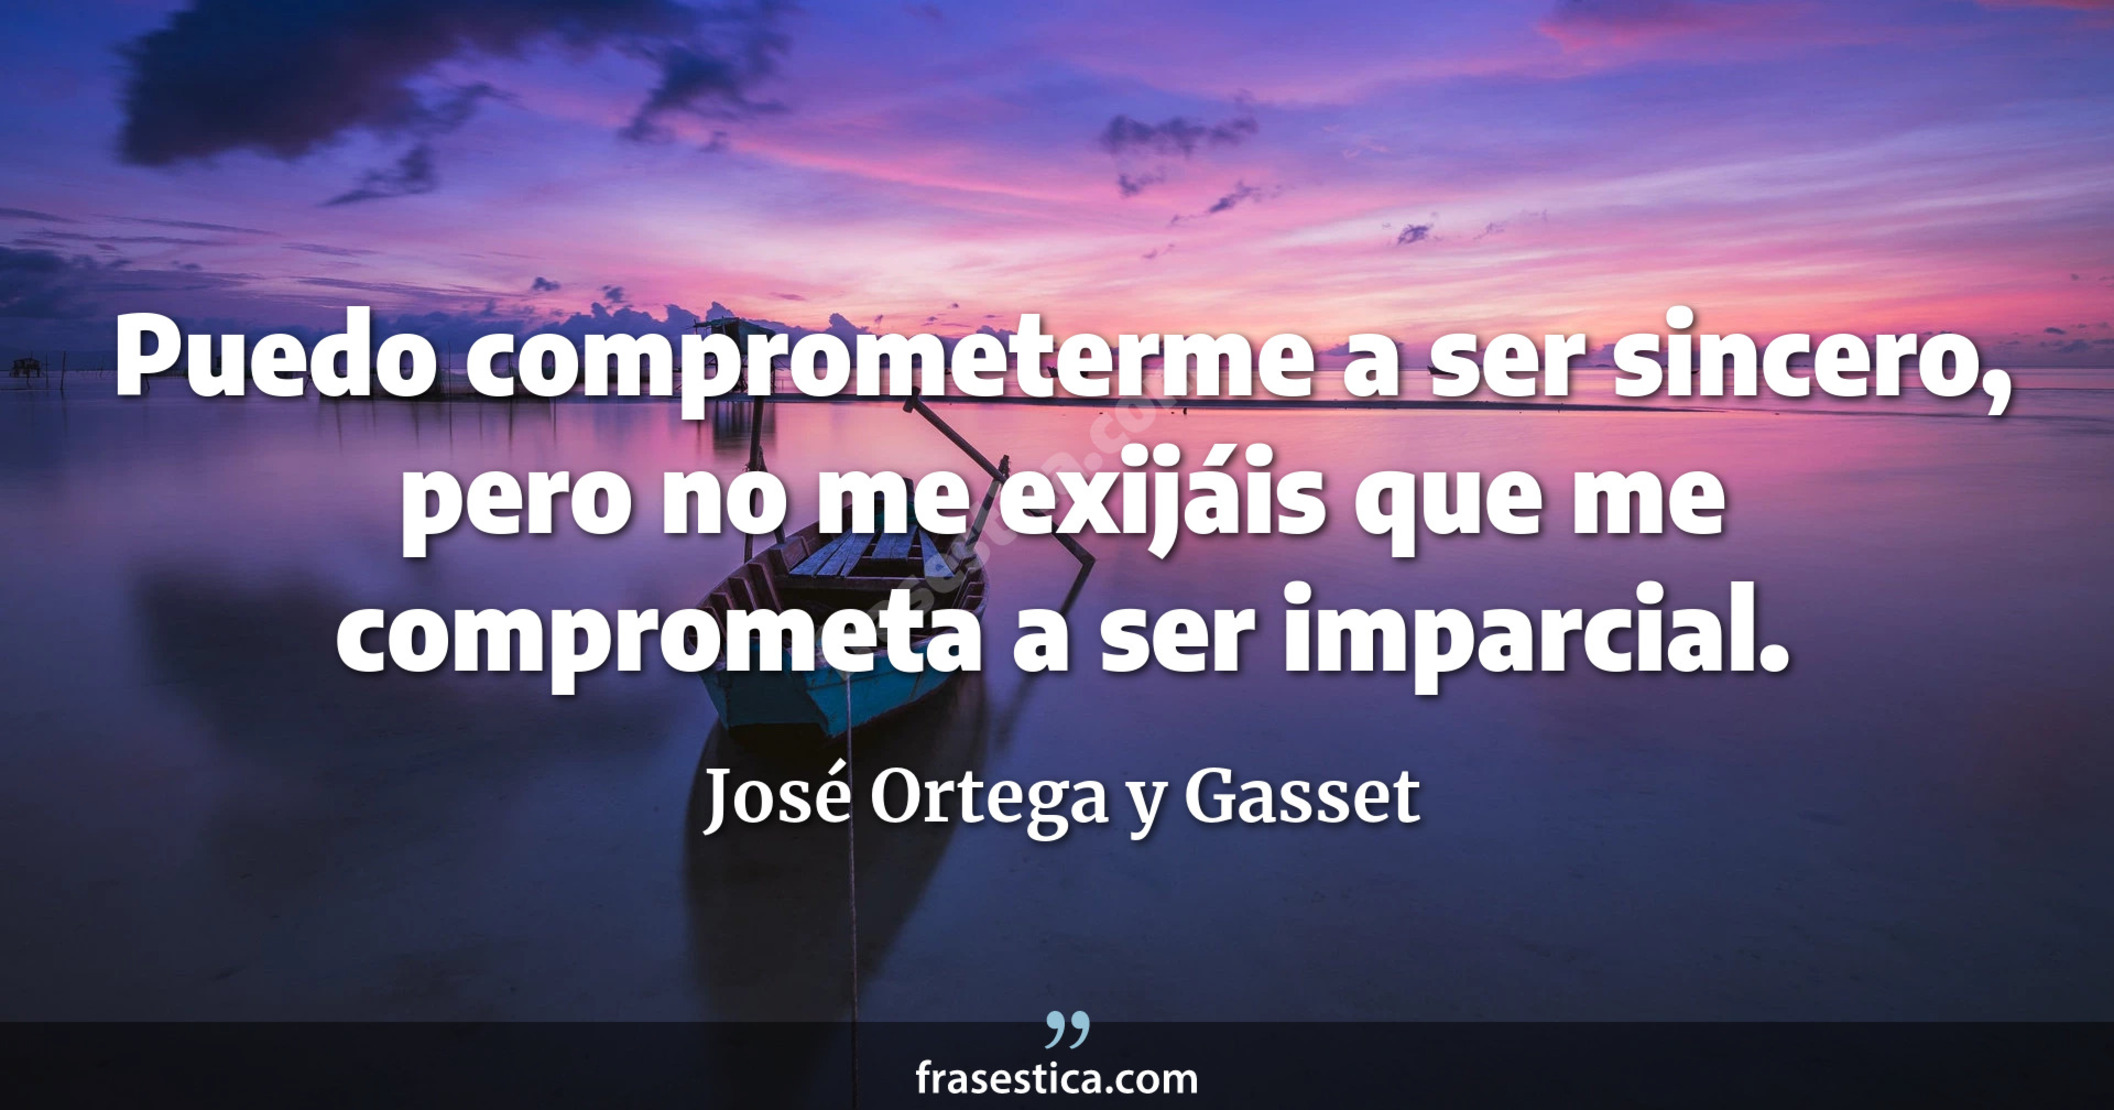 Puedo comprometerme a ser sincero, pero no me exijáis que me comprometa a ser imparcial. - José Ortega y Gasset